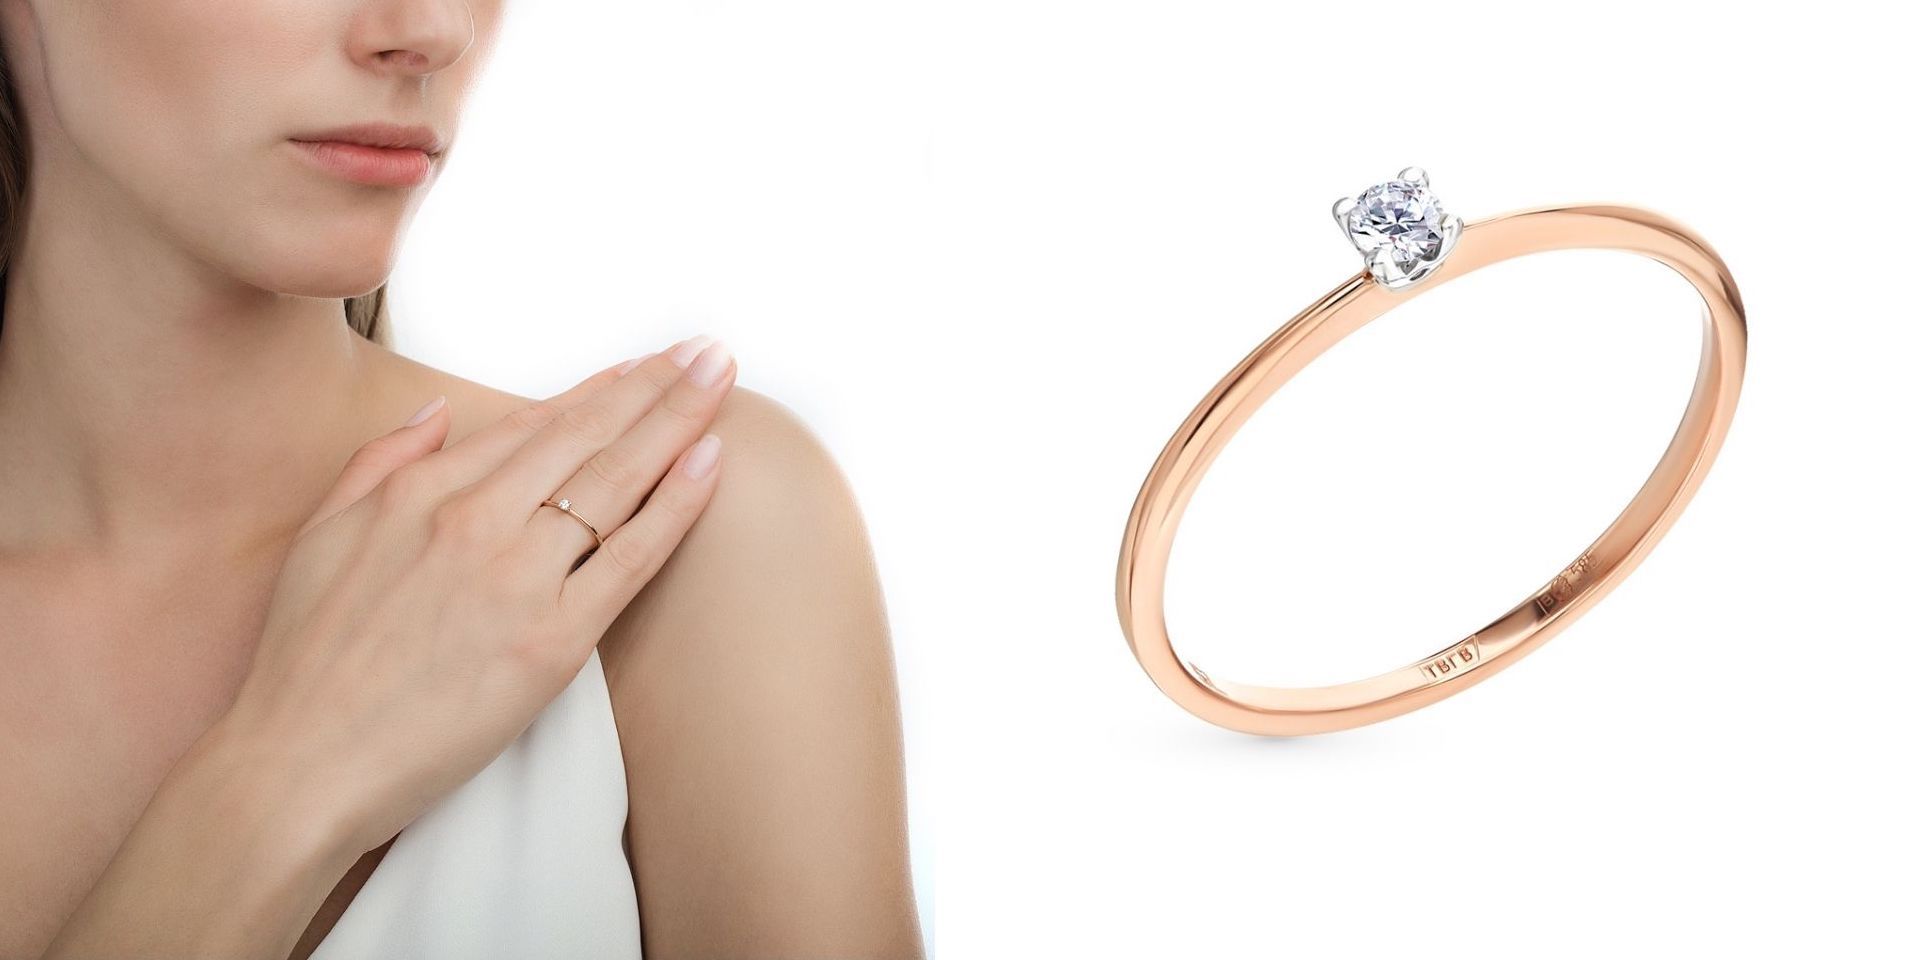 Как правильно носить обручальные и помолвочные кольца: можно ли носить наодном пальце